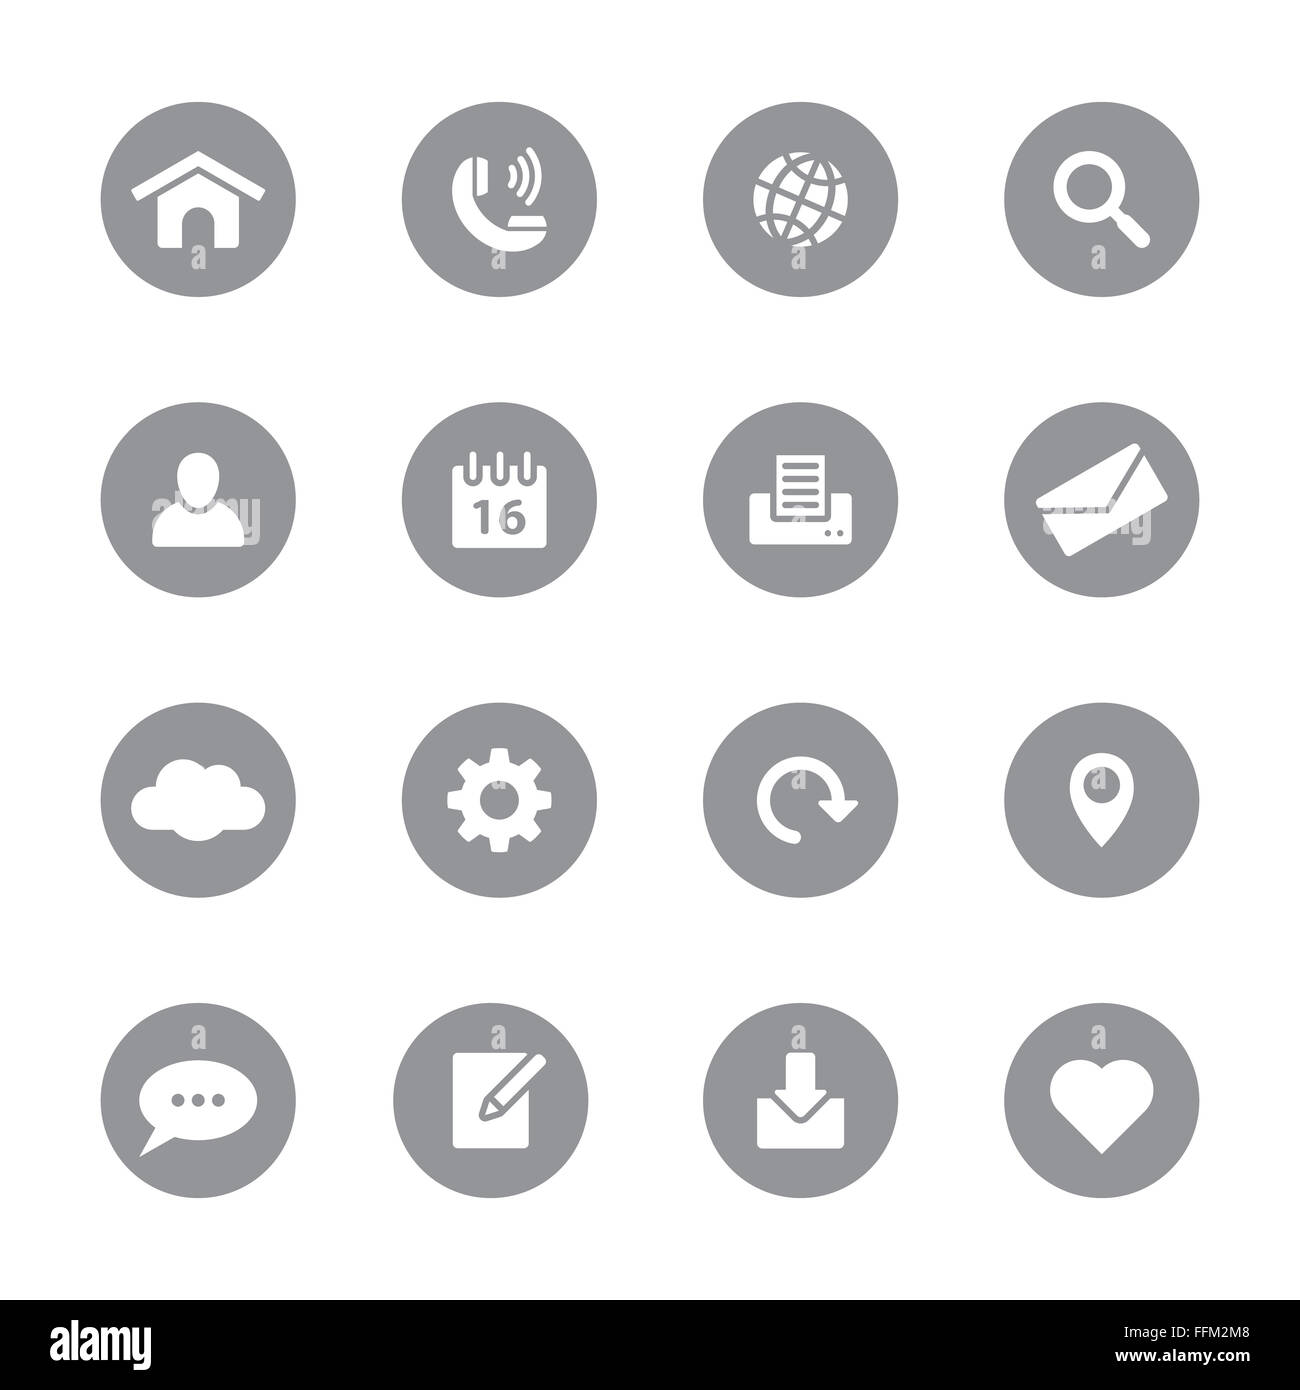 [JPEG] web icon set sur 1 cercle gris pour le web design, l'interface utilisateur (IU), l'infographie et de l'application mobile (apps) Banque D'Images